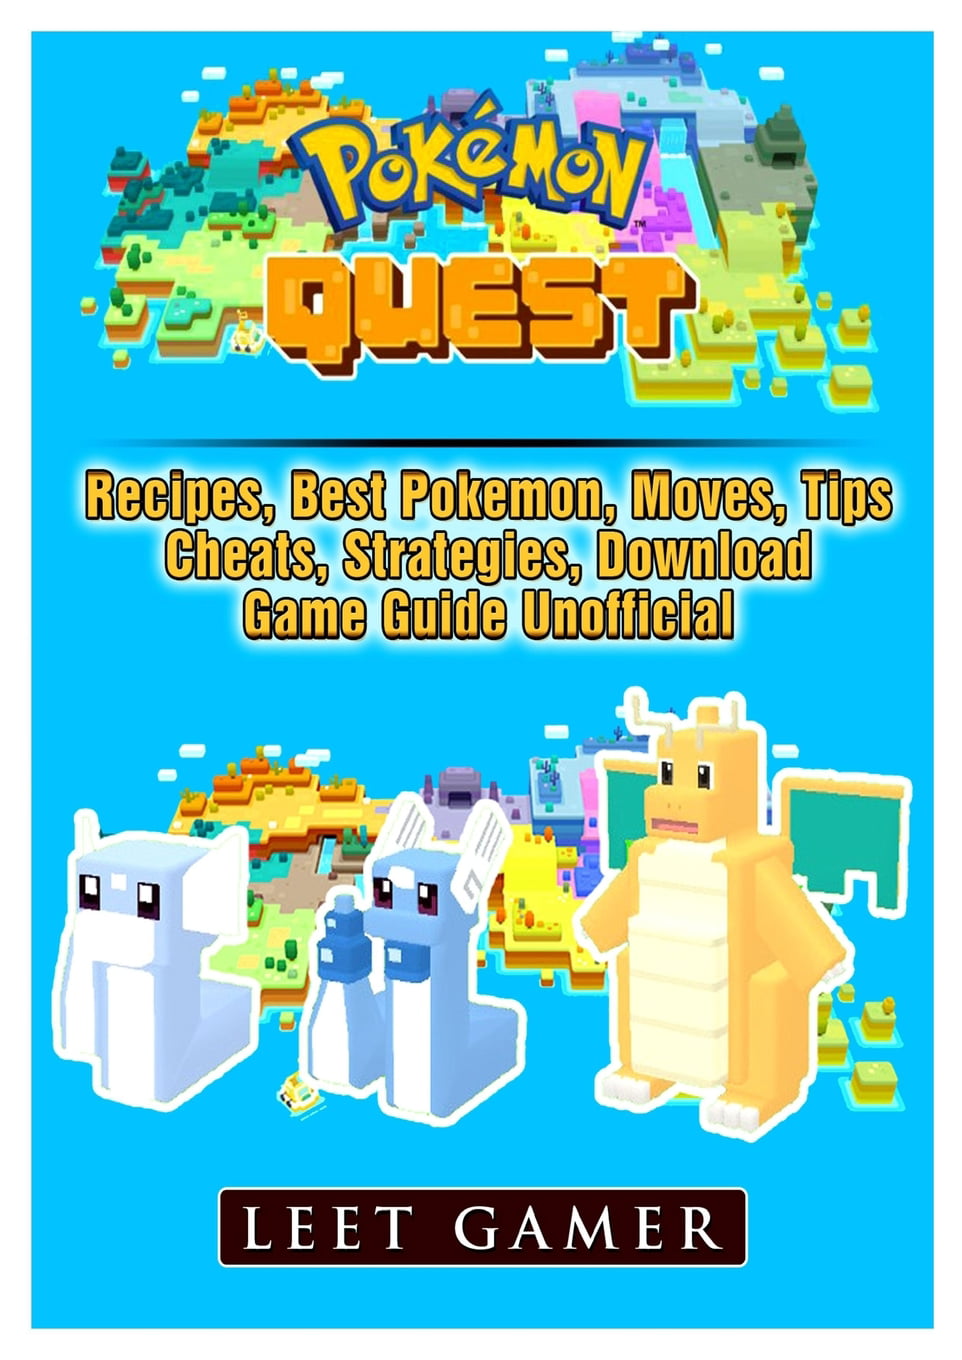 Move List - Pokemon Quest Guide - IGN